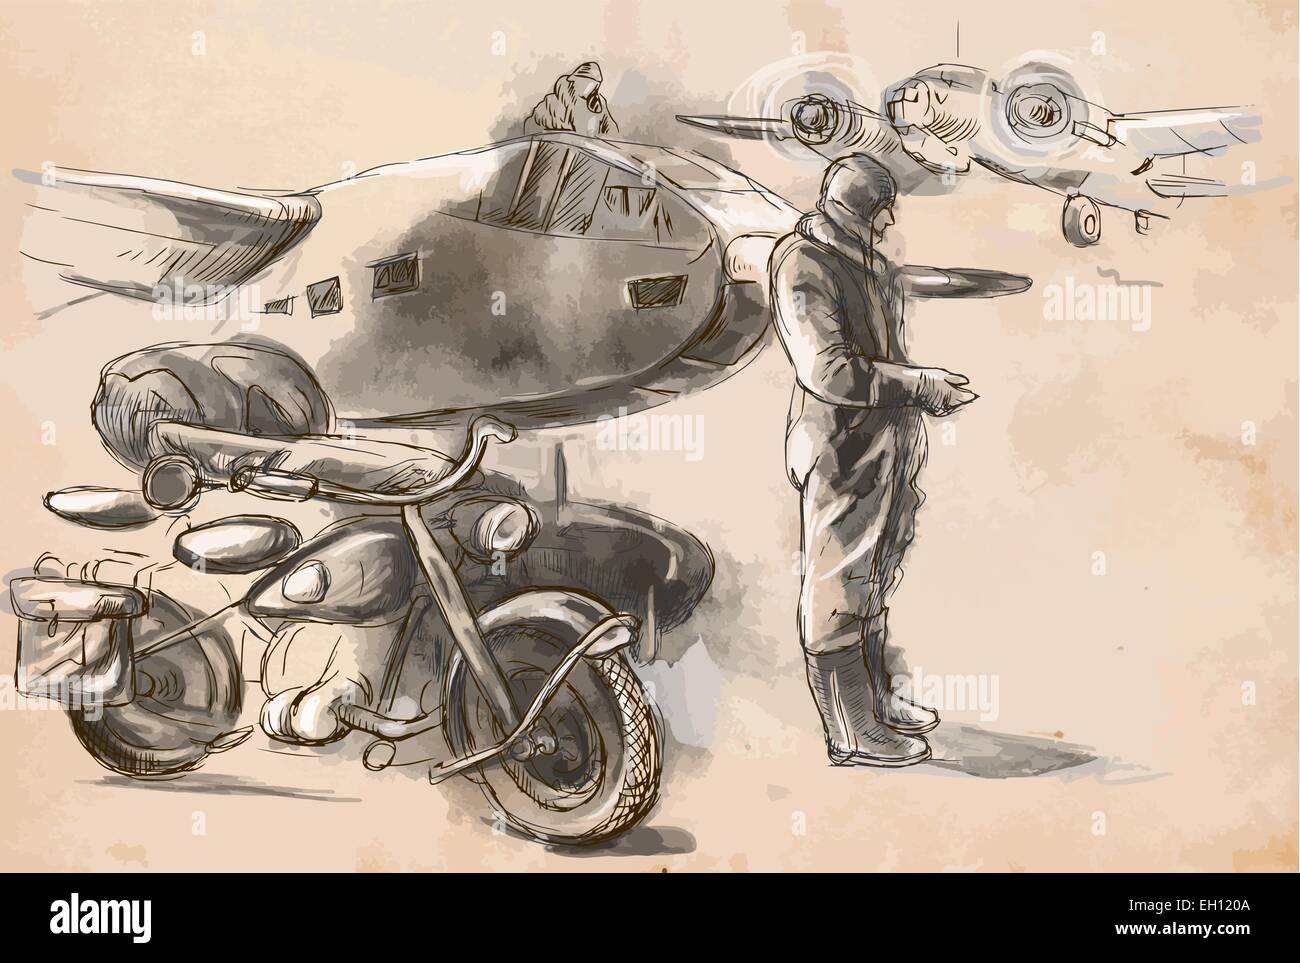 Vintage Bild aus der Serie: Welt zwischen 1905 bis 1949. Auf dem Flughafen - ein Soldat auf einem Motorrad zwischen Flugzeugen. Ein Hand-d Stock Vektor